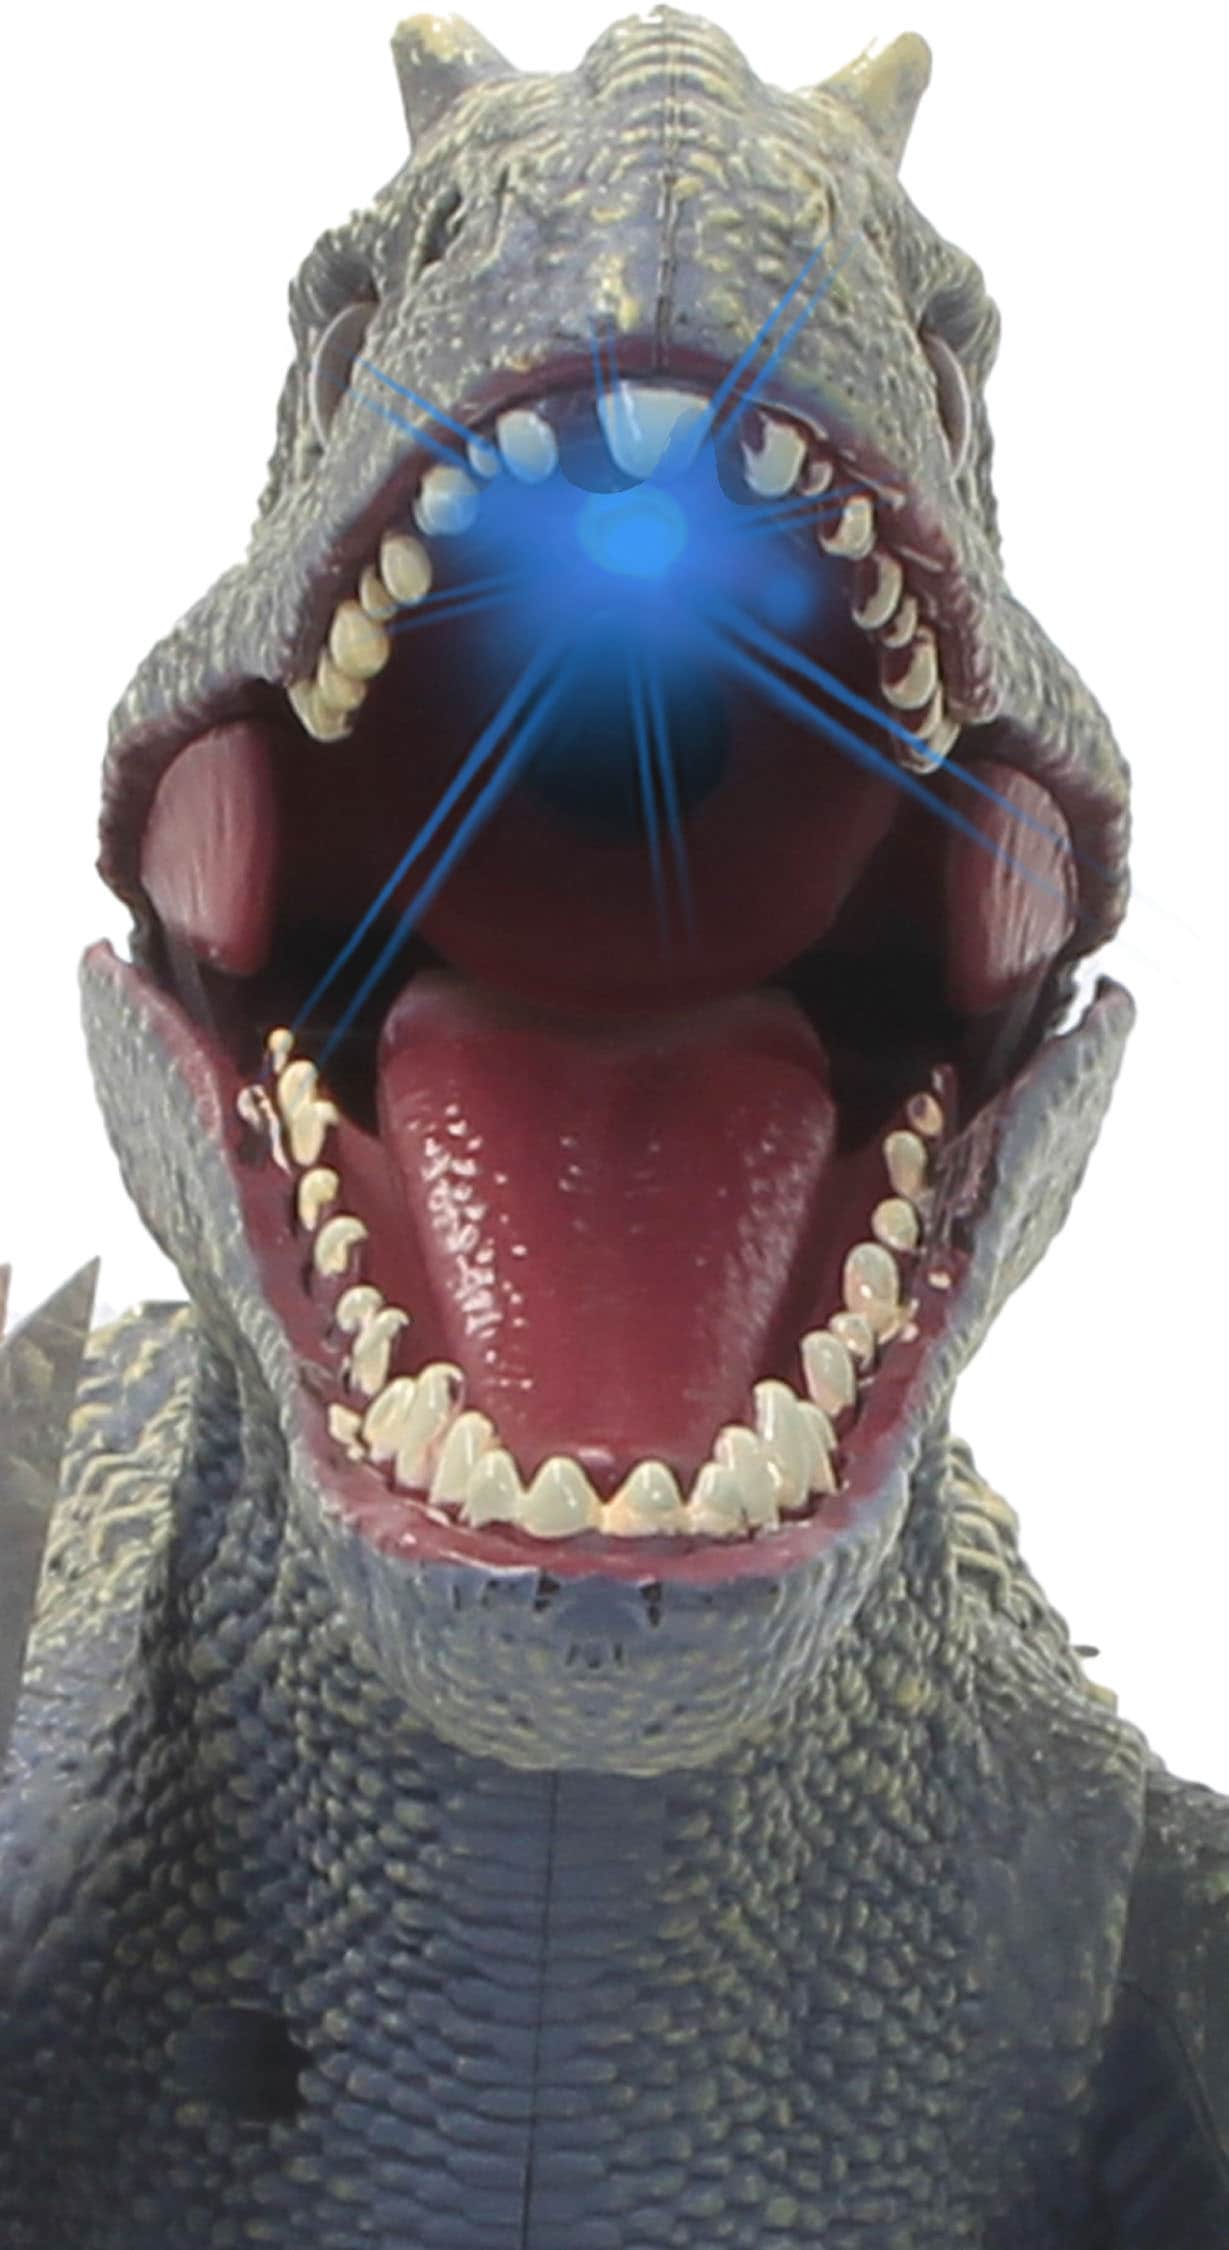 Jamara RC-Tier »Dinosaurier Exoraptor, Li-Ion 3,7V, 2,4GHz, grau«, mit Licht und Sound